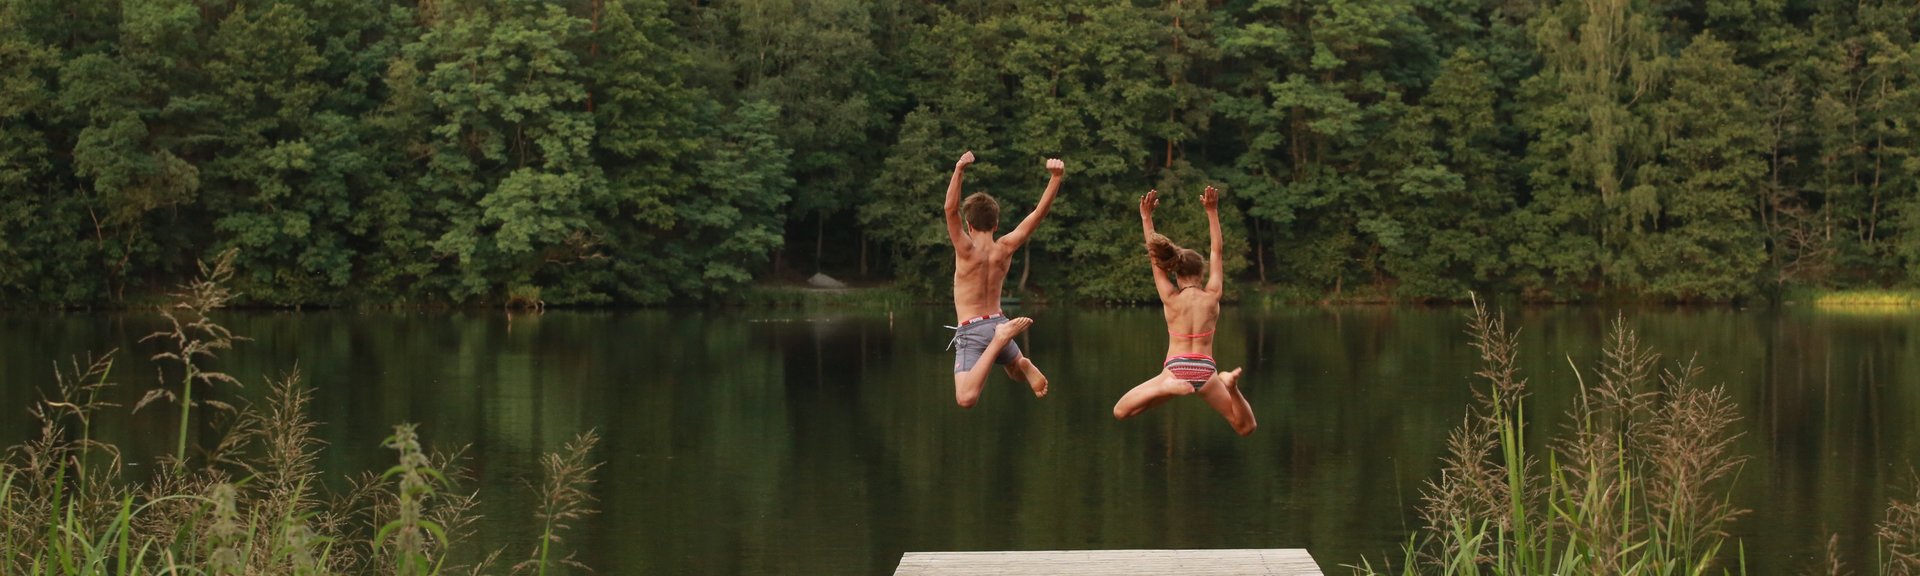 zwei Kinder springen vom Steg aus in den See